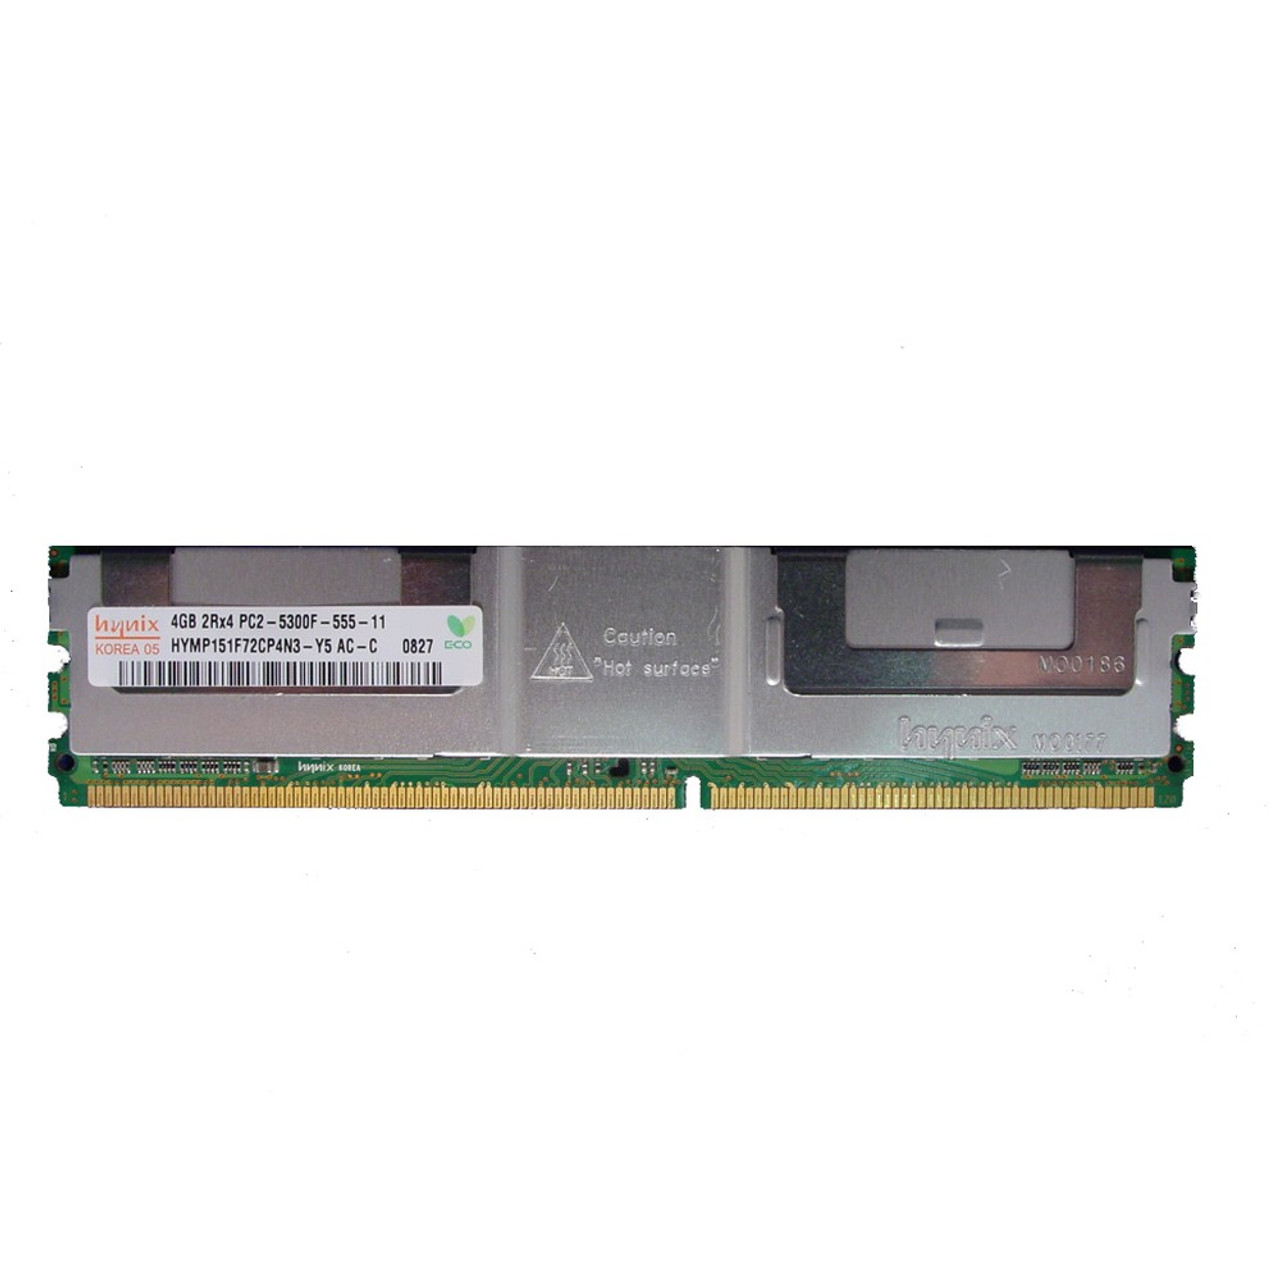 Memo folkeafstemning Ocean Dell DR397 4GB PC2-5300F 667MHz 2RX4 DDR2 ECC Memory RAM DIMM 0DR397